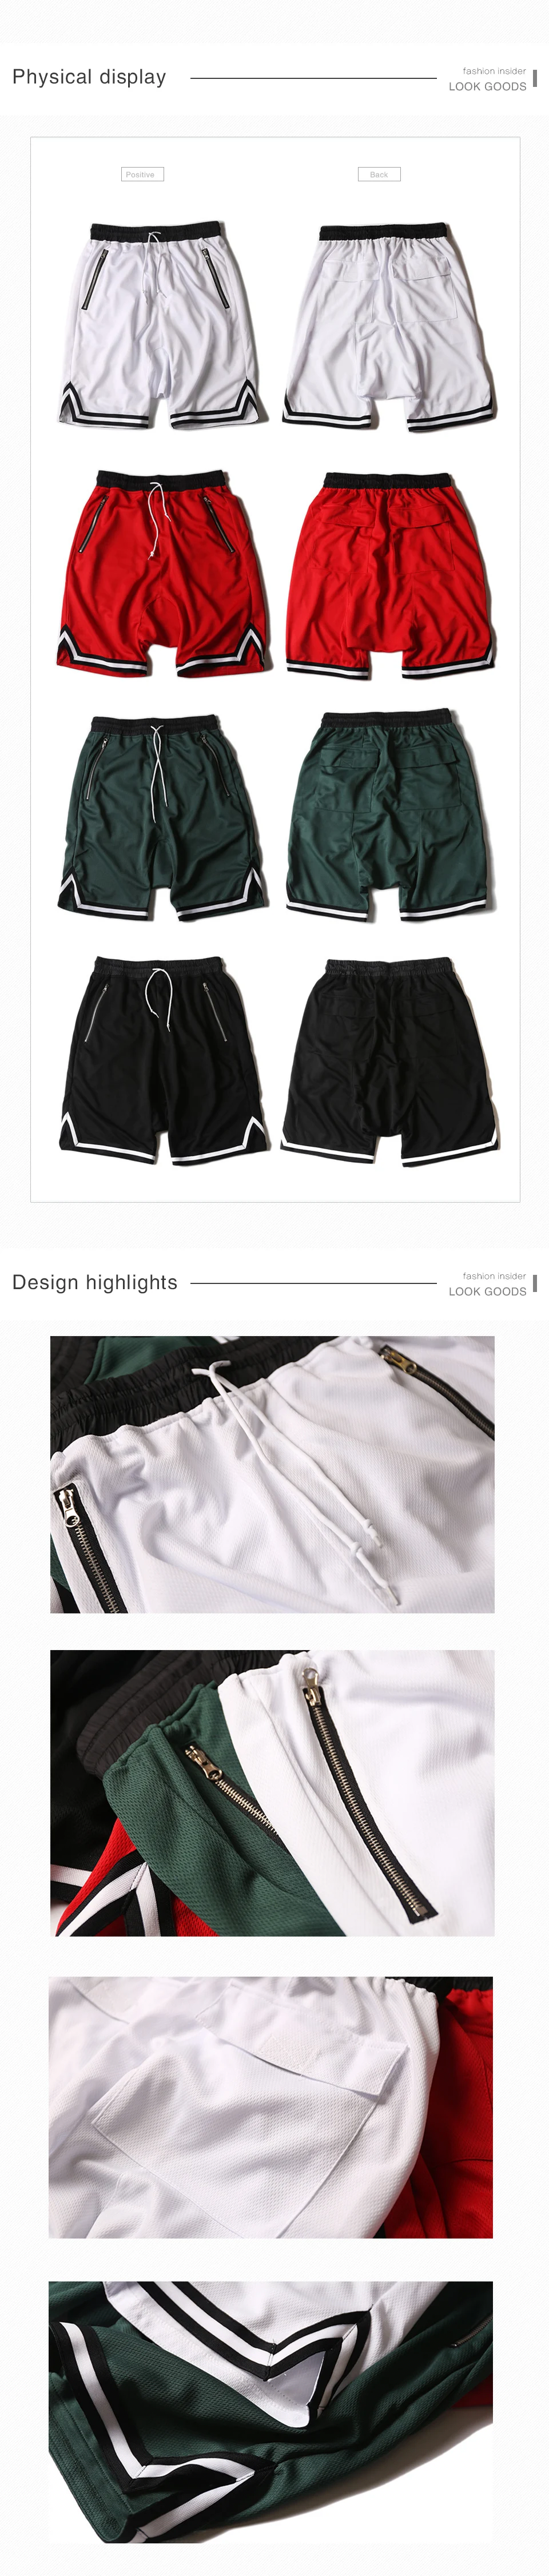 HEYGUYS новые сетчатые шорты мужские Хип Хоп Уличная одежда fours цвета Модная одежда для мужчин большие размеры повседневные шорты пляжные